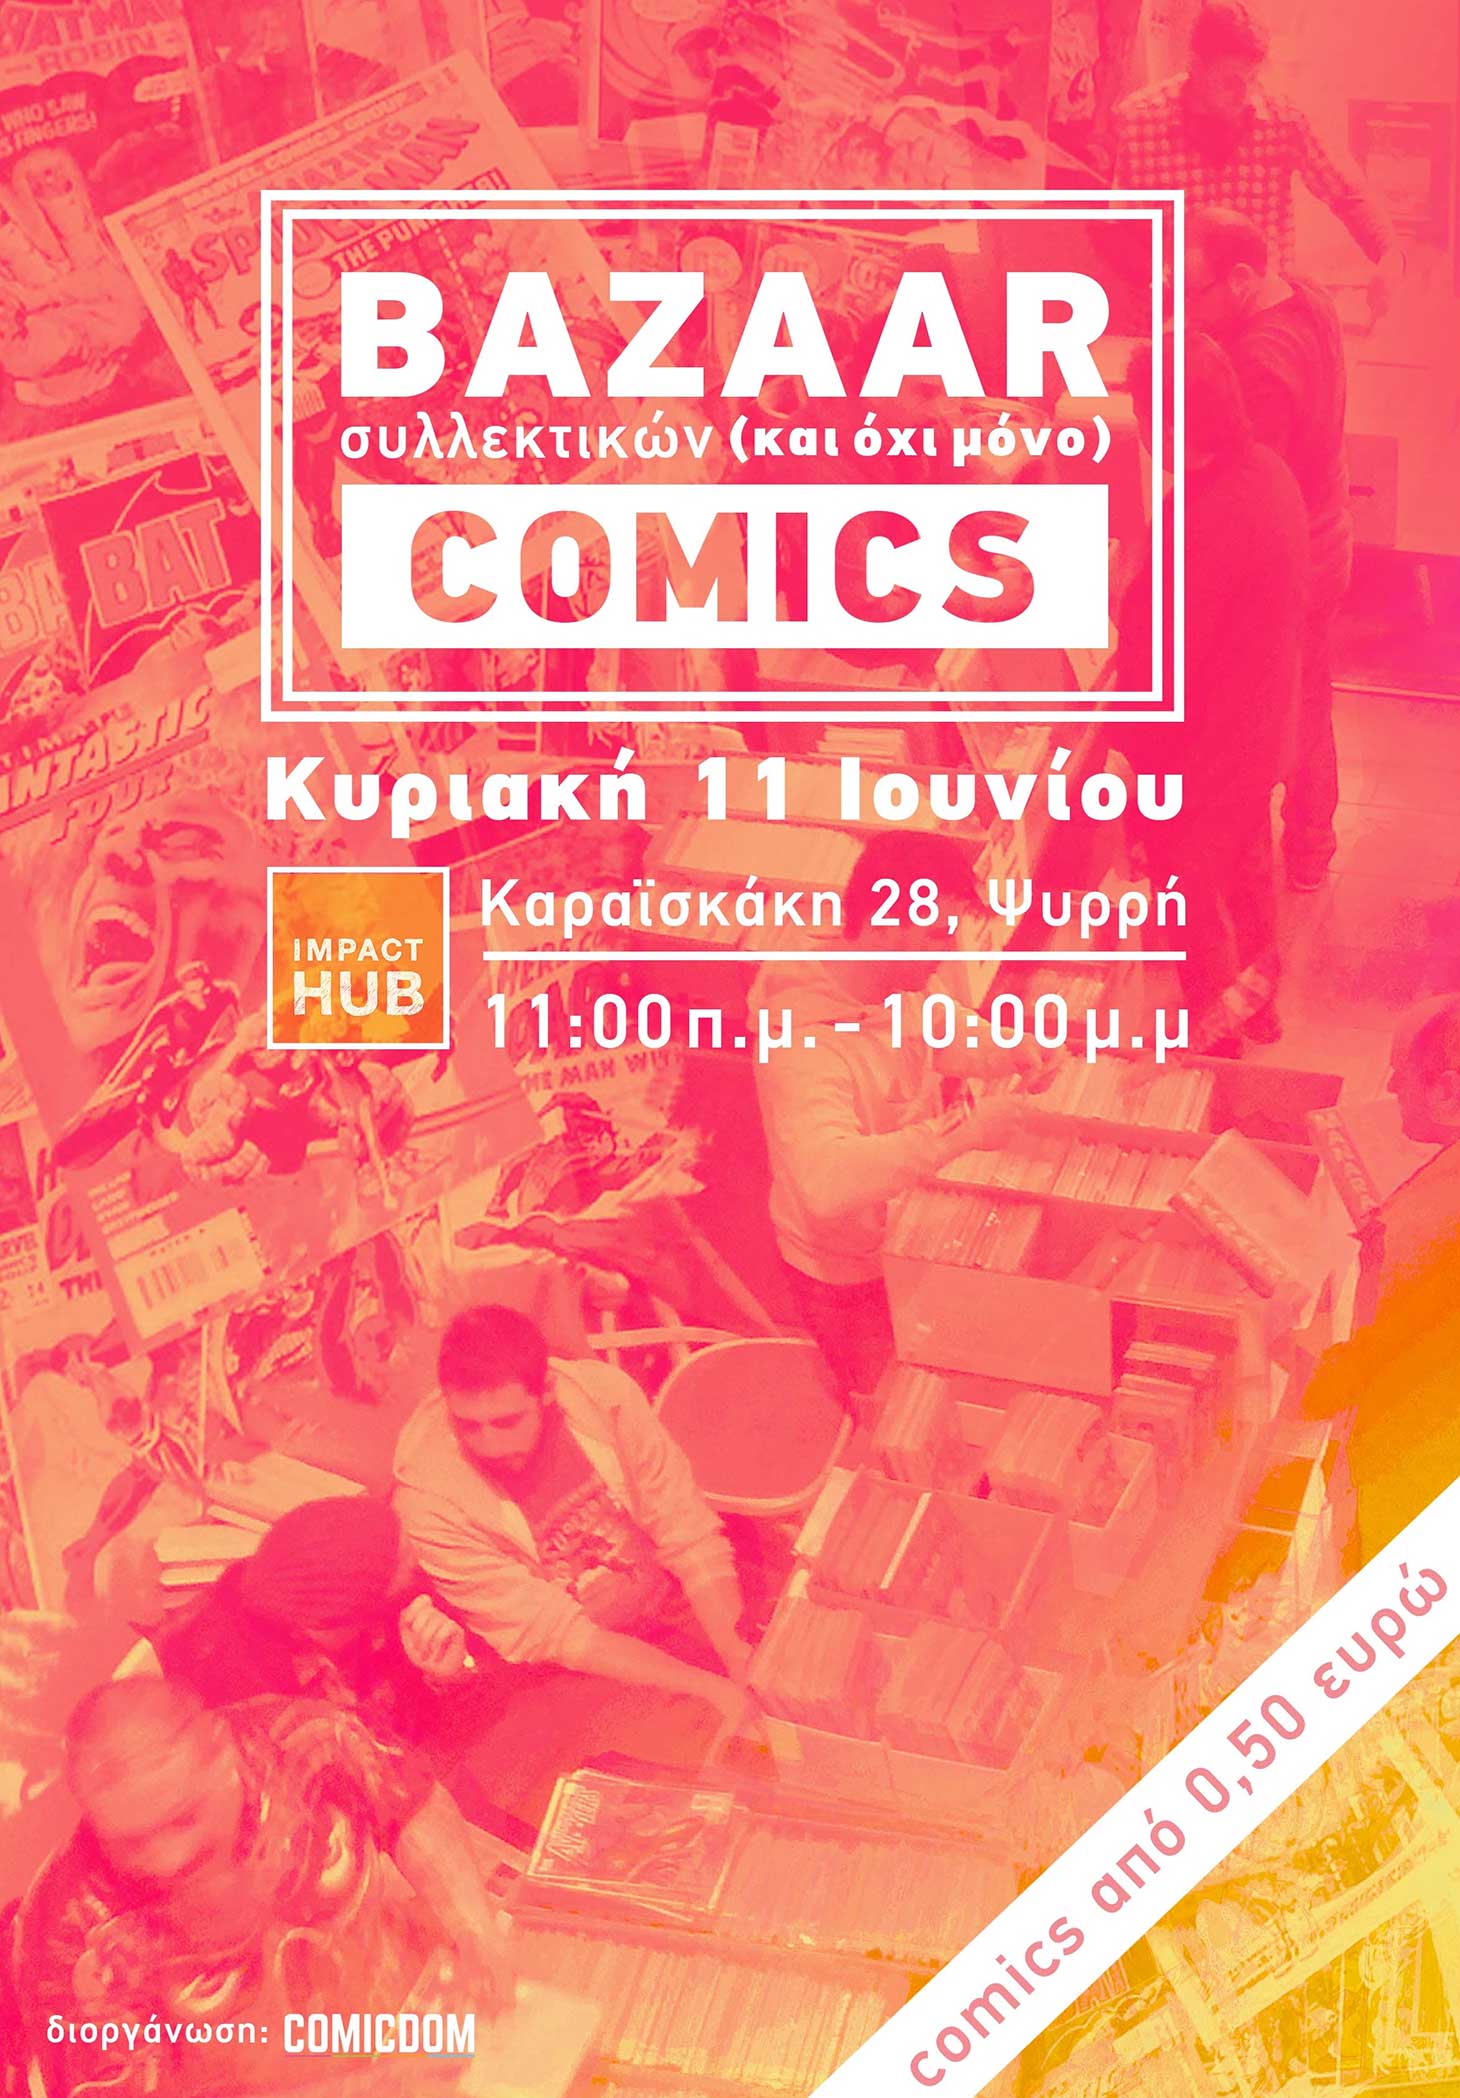 Comicdom Bazaar Summer 2017